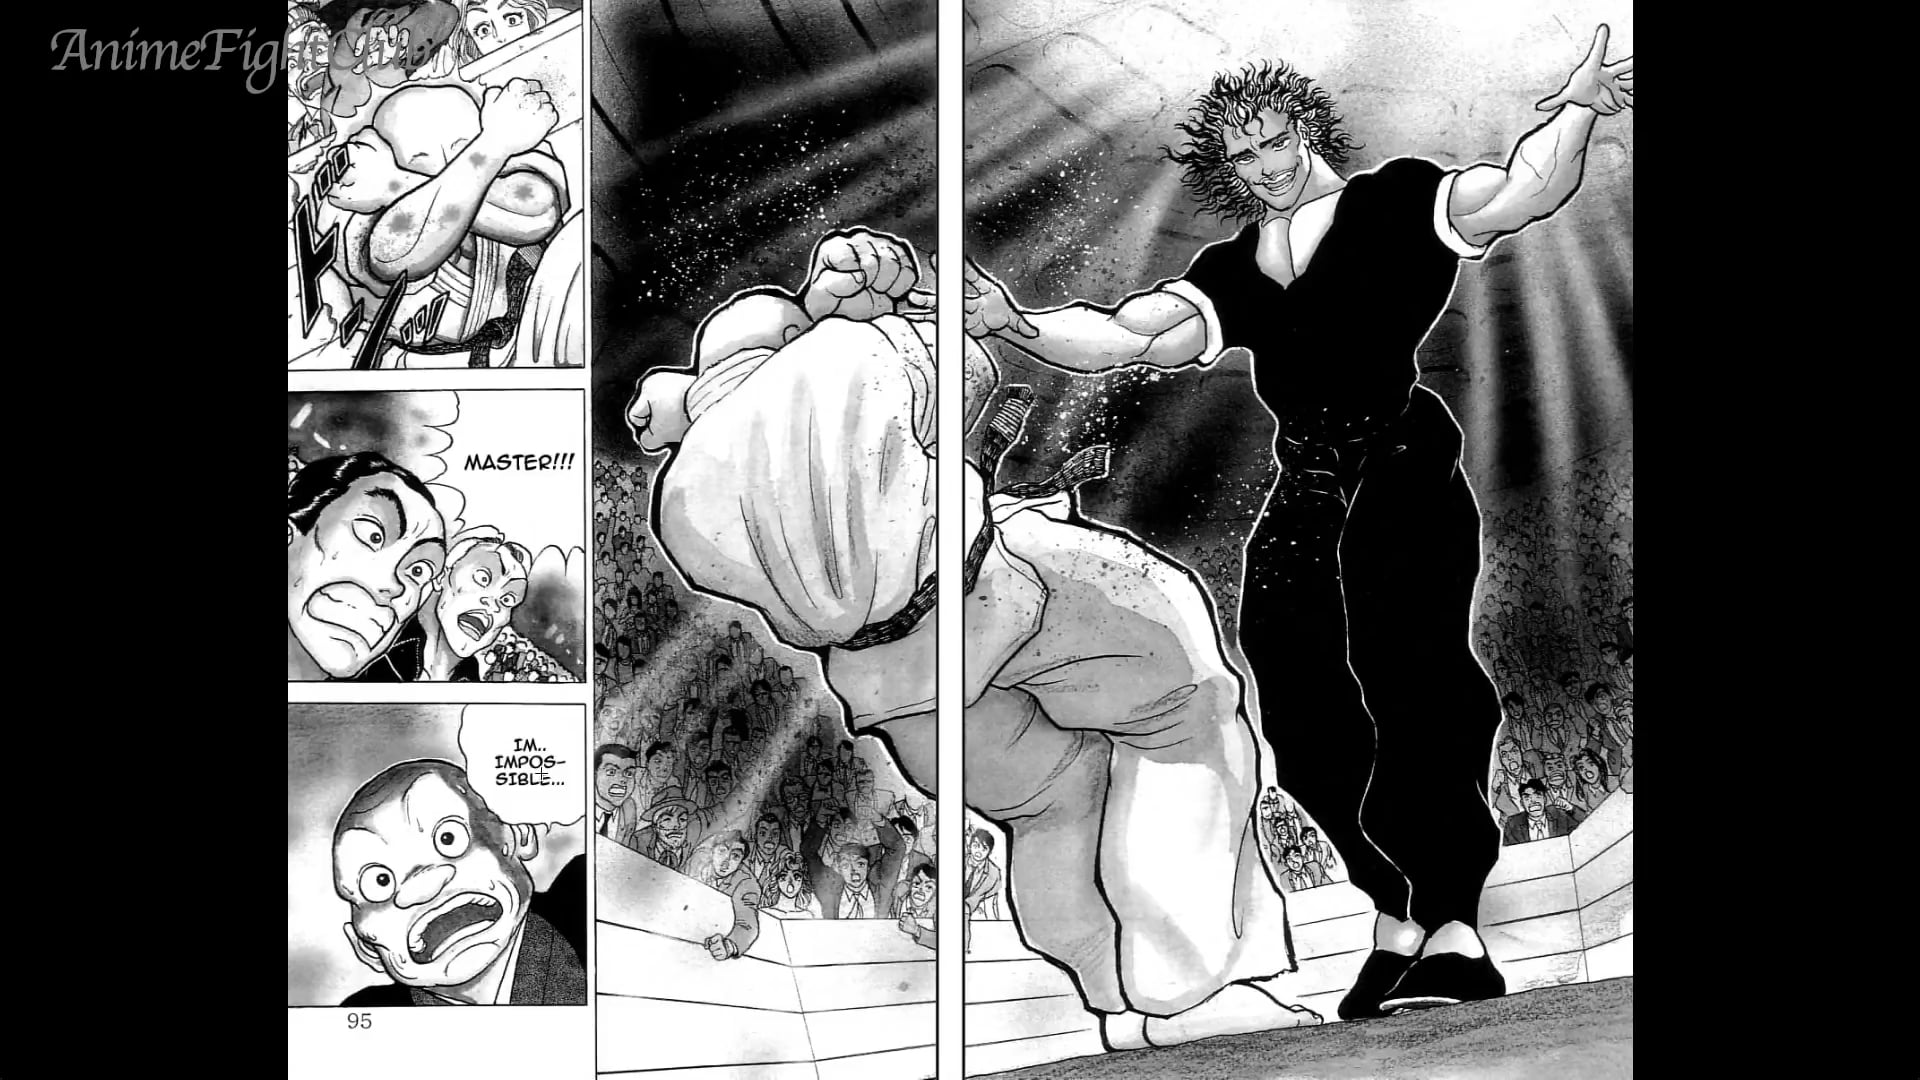 Doppo Orochi vs Yujiro Hanma!! (2 of 3) - Grappler Baki Chapters